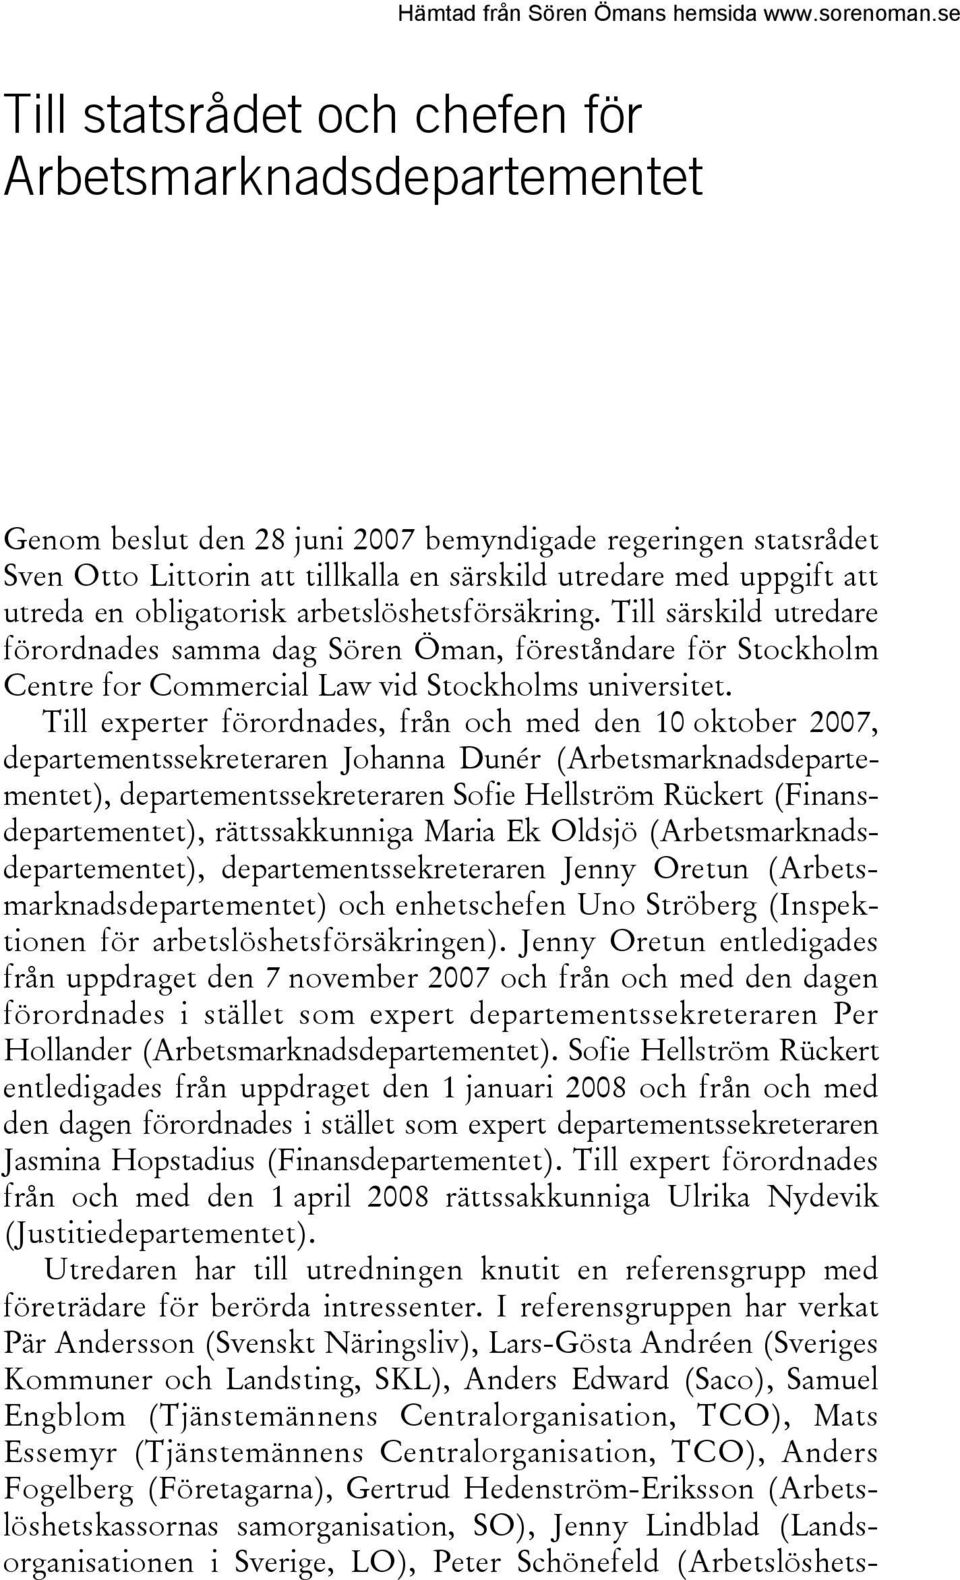 Till experter förordnades, från och med den 10 oktober 2007, departementssekreteraren Johanna Dunér (Arbetsmarknadsdepartementet), departementssekreteraren Sofie Hellström Rückert